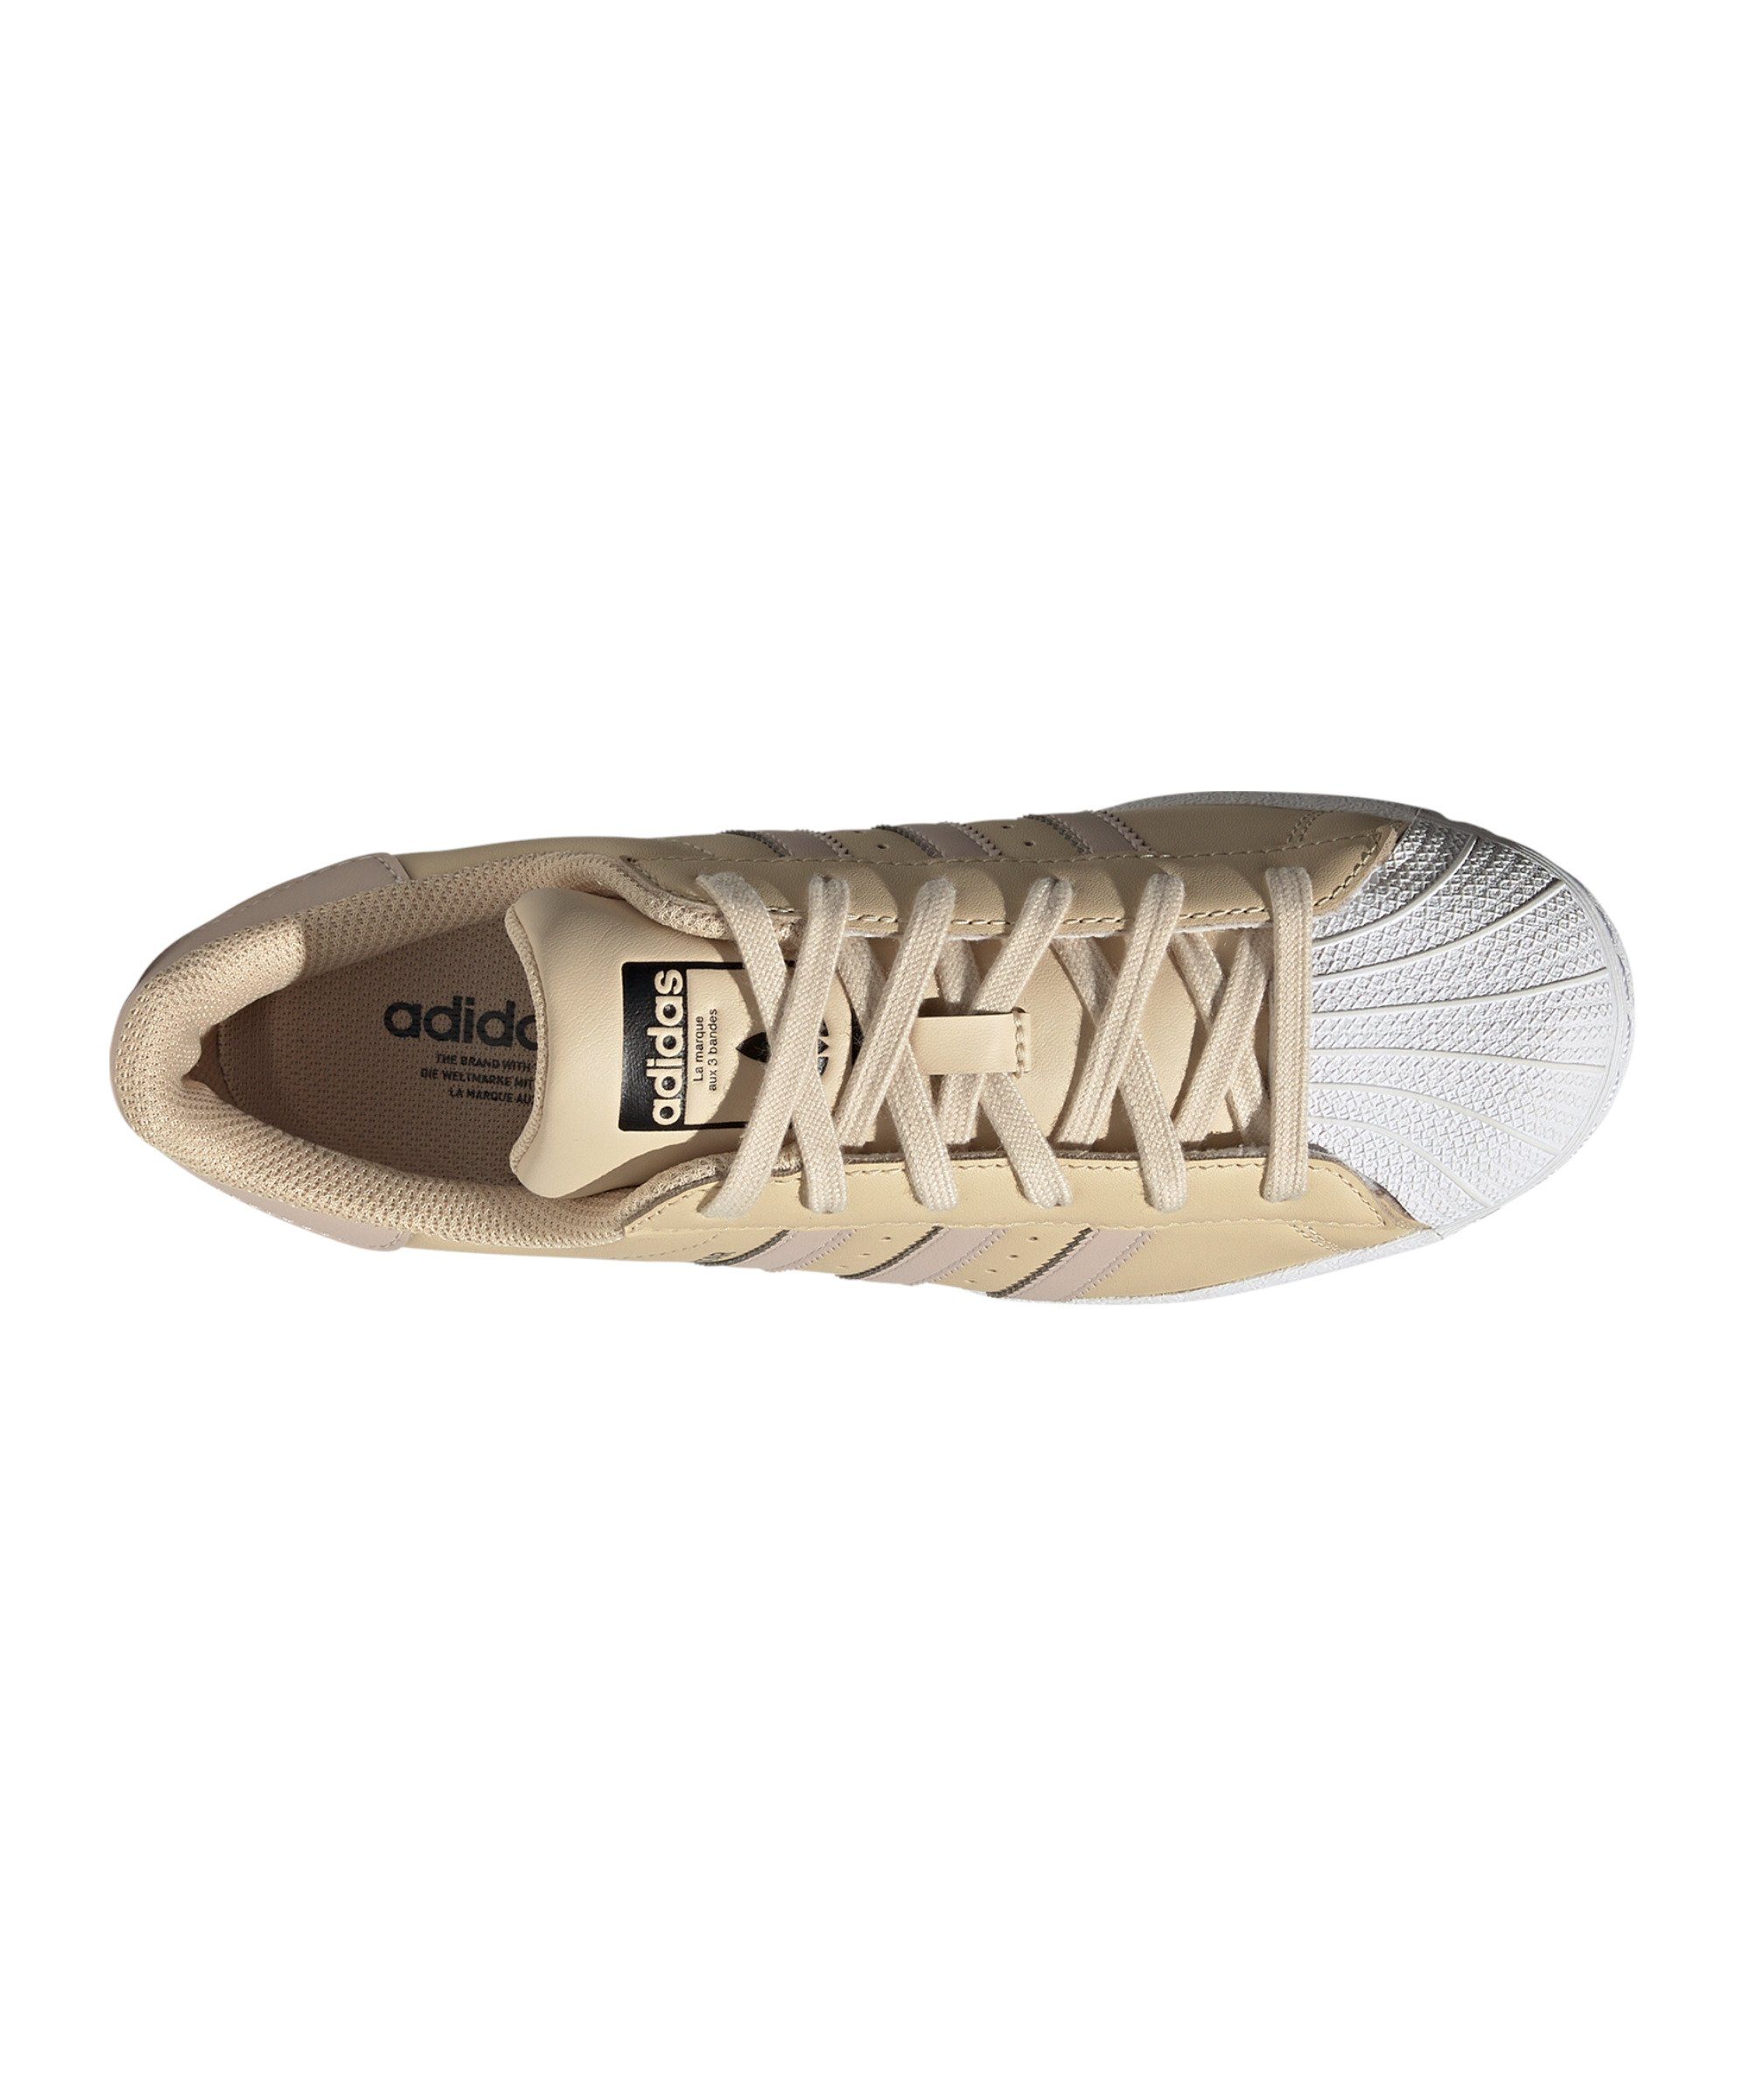 adidas Originals Superstar Damen gelbbraunschwarz Sneaker